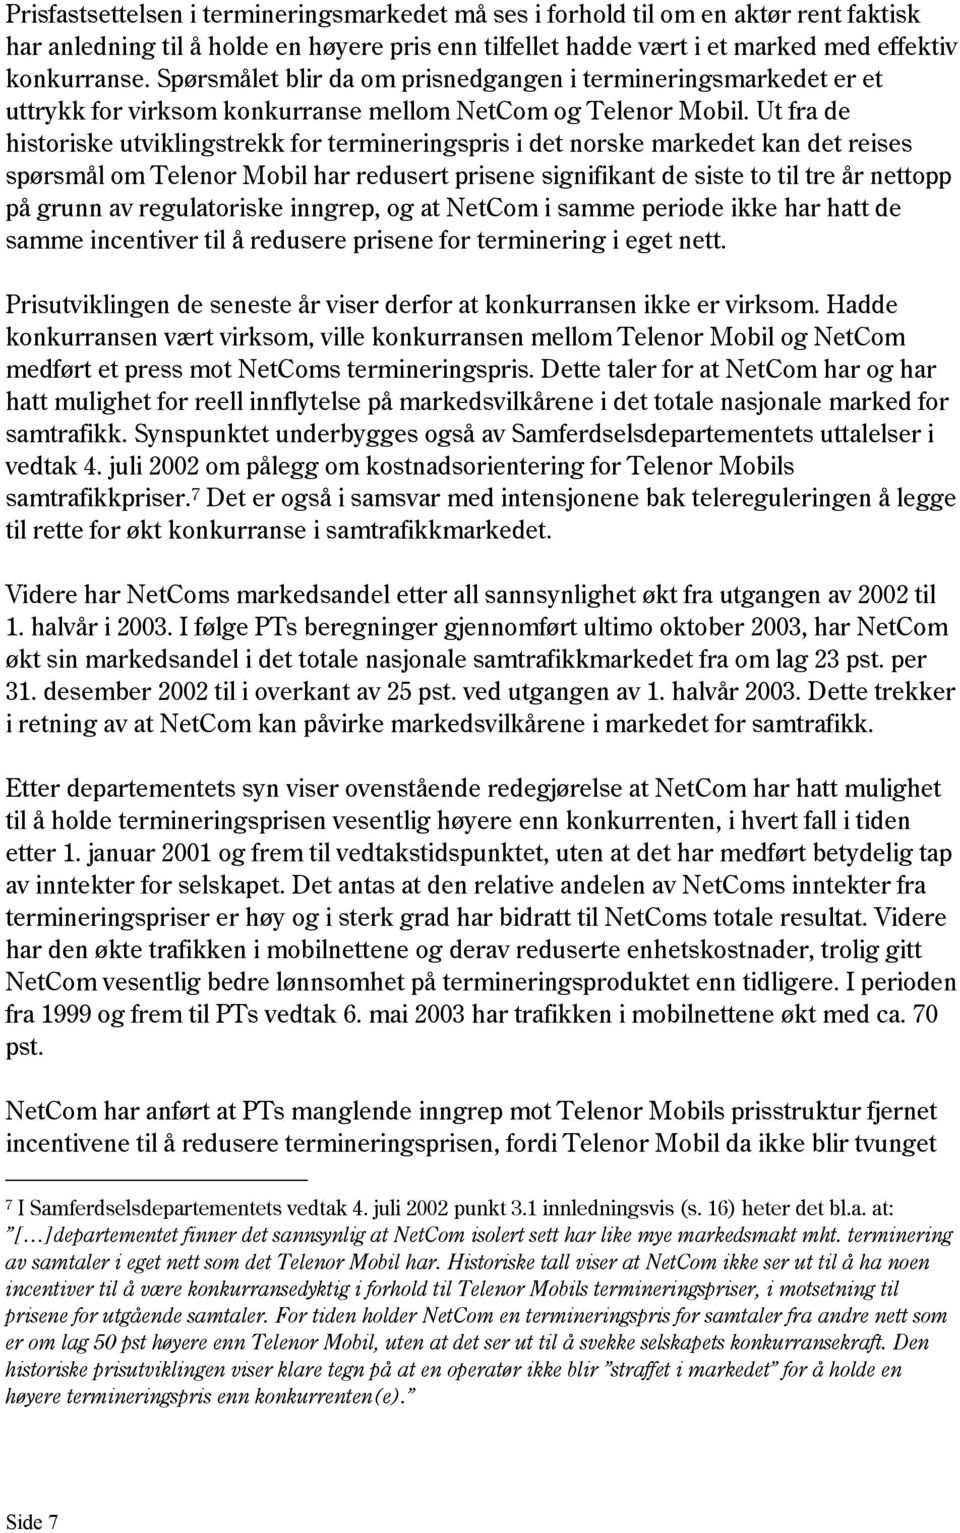 Ut fra de historiske utviklingstrekk for termineringspris i det norske markedet kan det reises spørsmål om Telenor Mobil har redusert prisene signifikant de siste to til tre år nettopp på grunn av